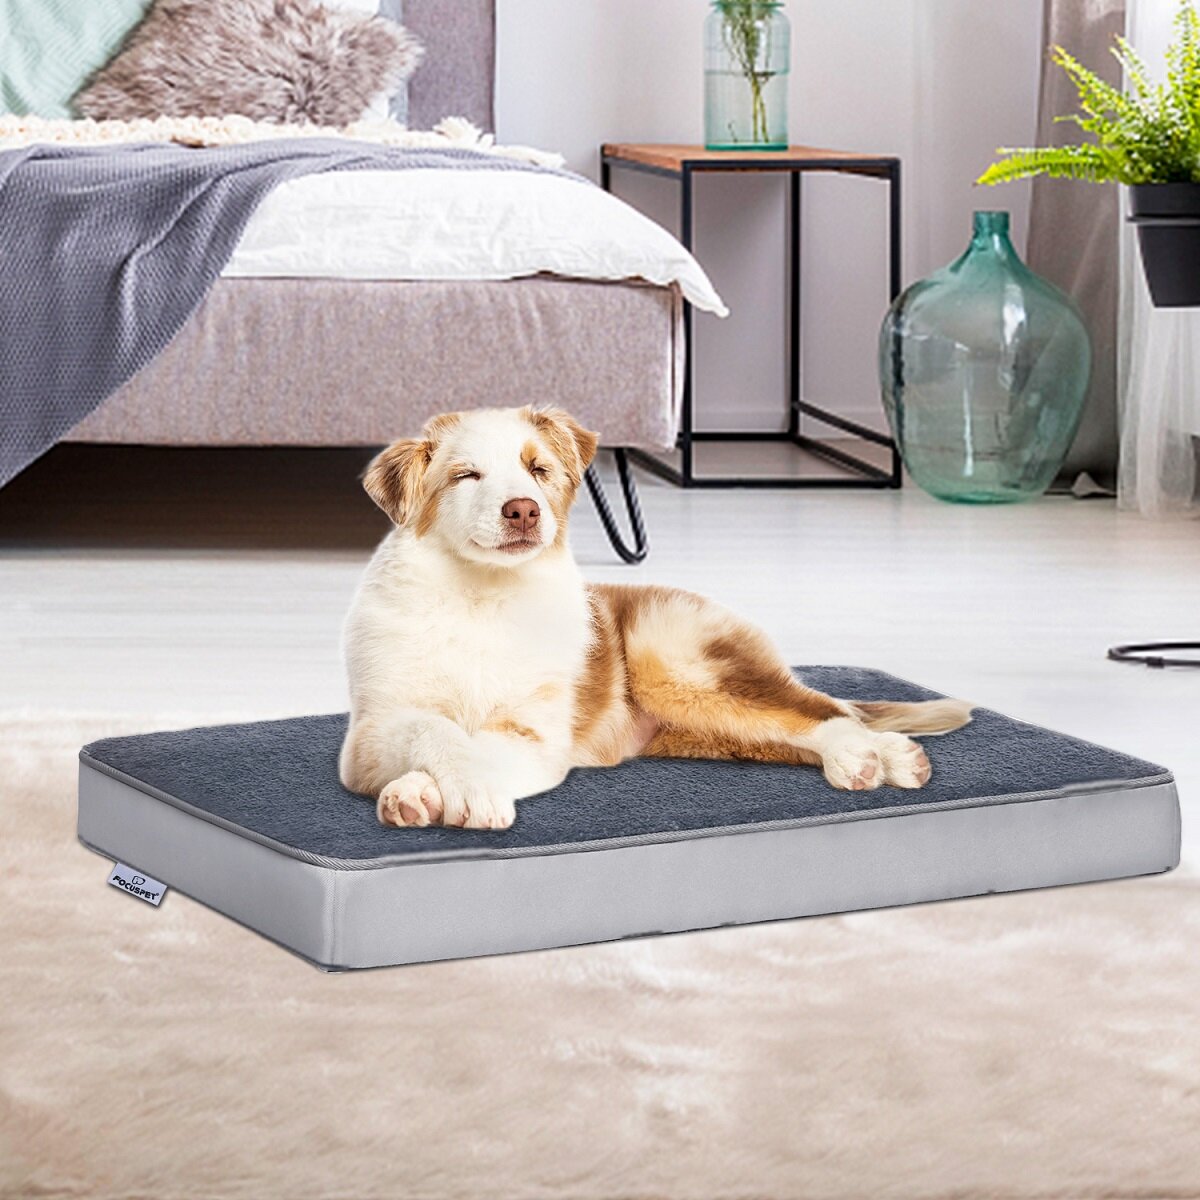 Focuspet Orthopaedic Dog Pad m 74 * 46 * 7.5cm, Detachable Dog Basket, Washable Non Slip Dog and Cat Bed, Orthopaedic Do